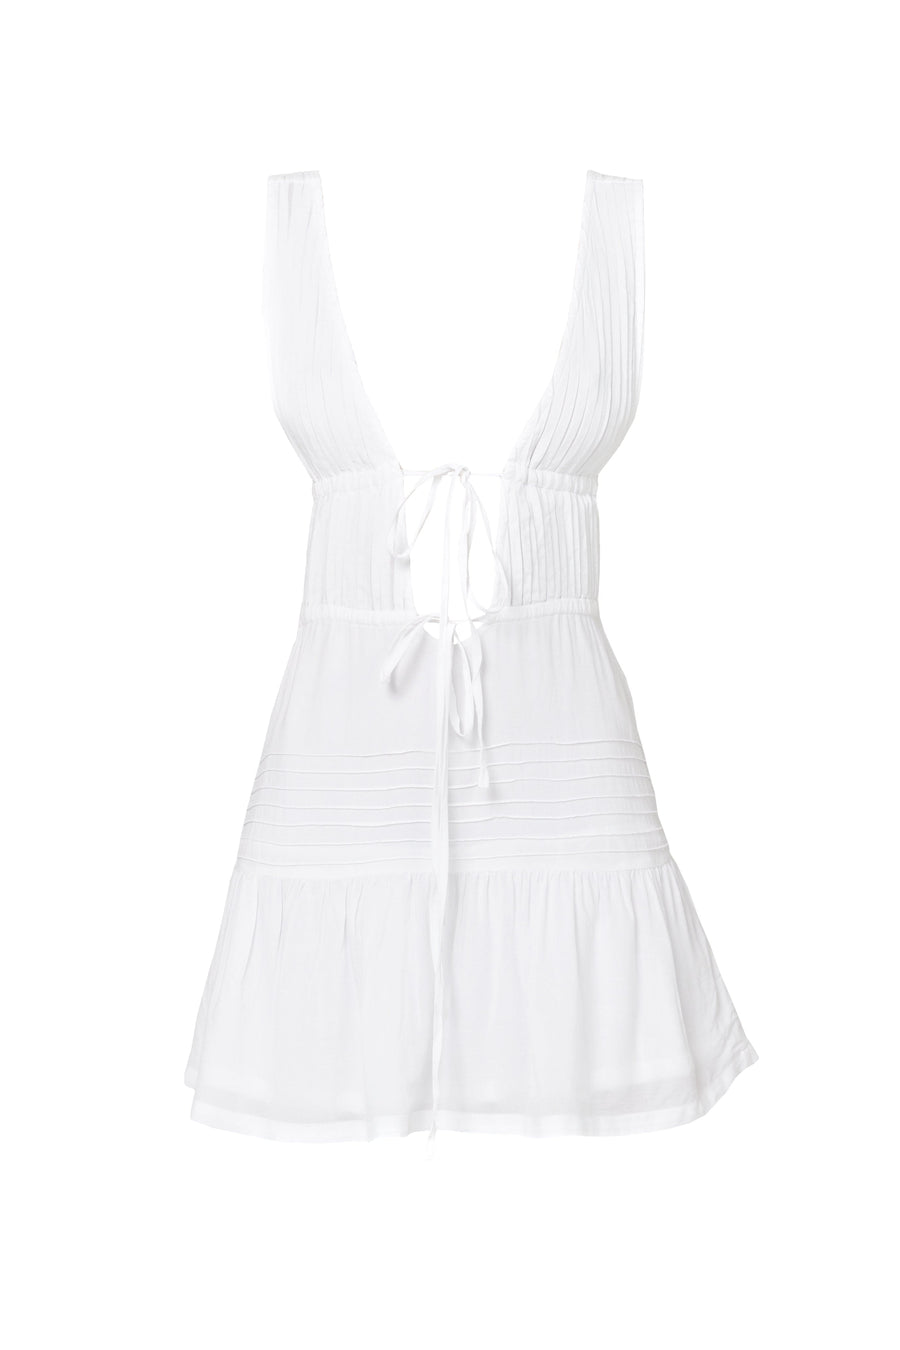 CAPRI dress- bianco  -  CLOTHING  -  B Ā M B A S W I M